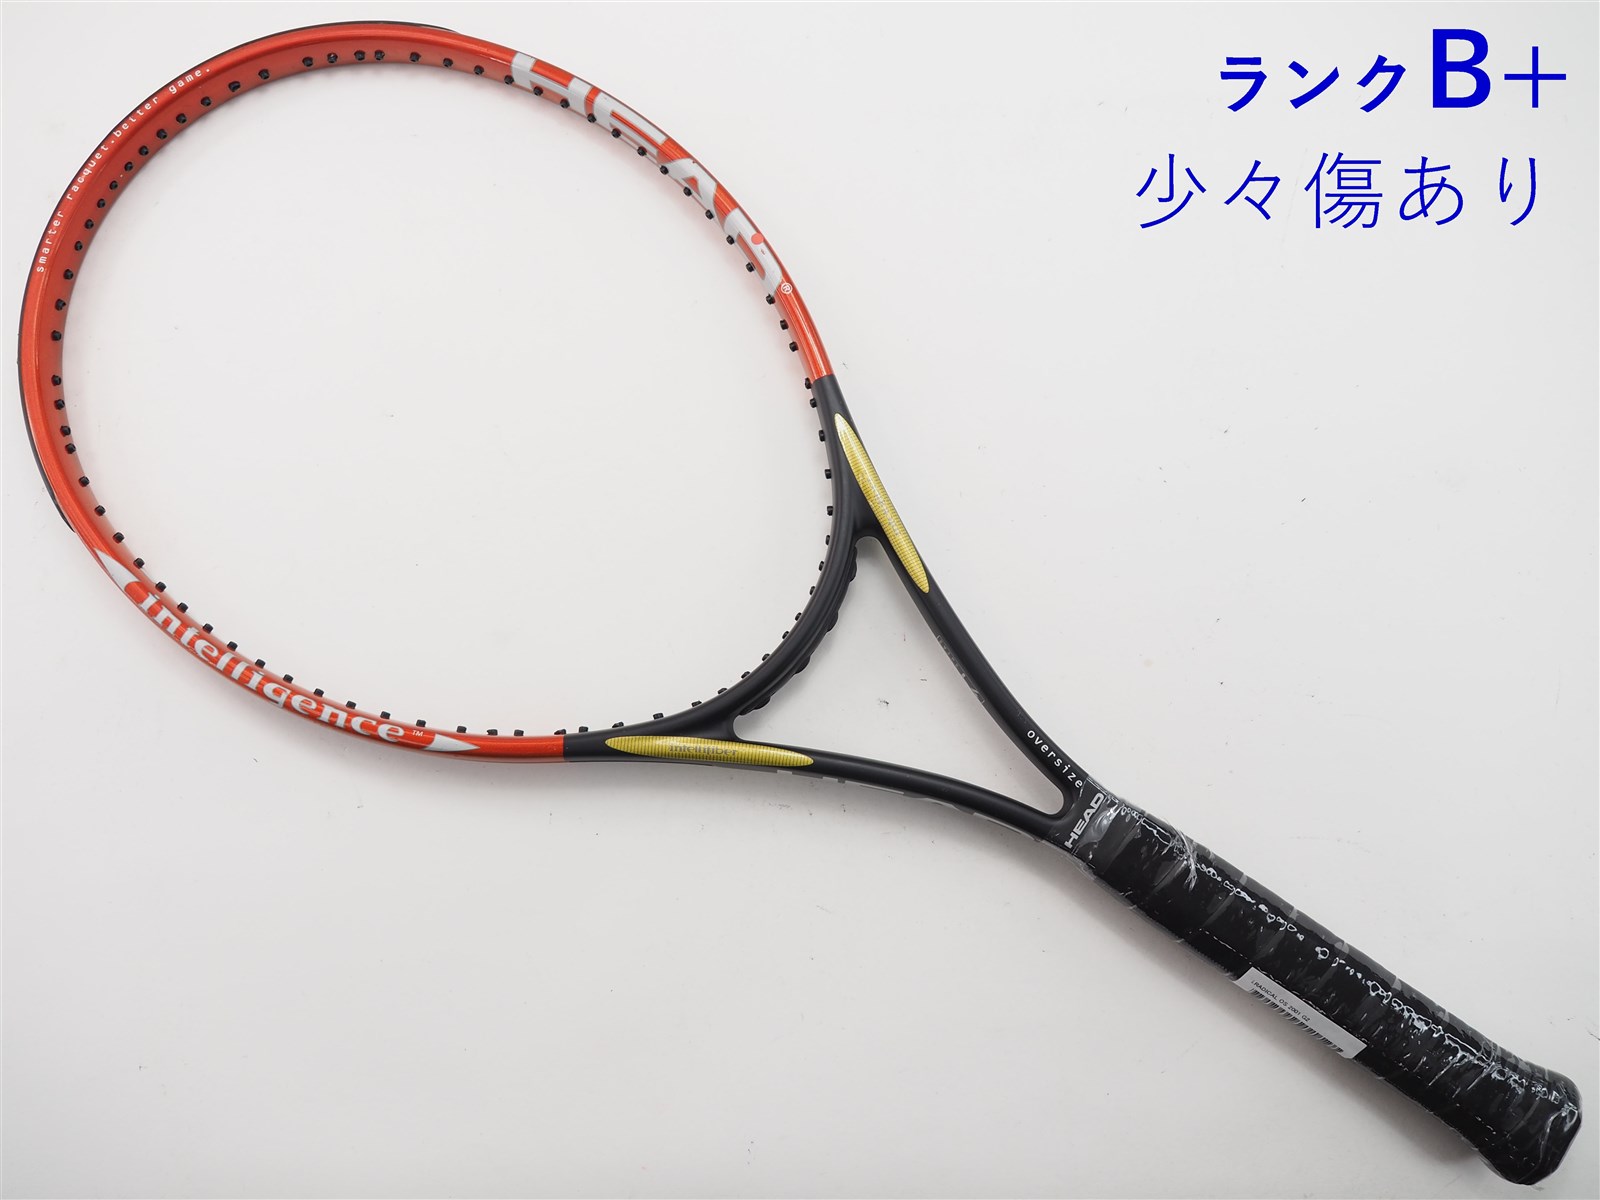 Wilson ハイパーハンマー 6.2 硬式用 テニス ラケット 2本セット